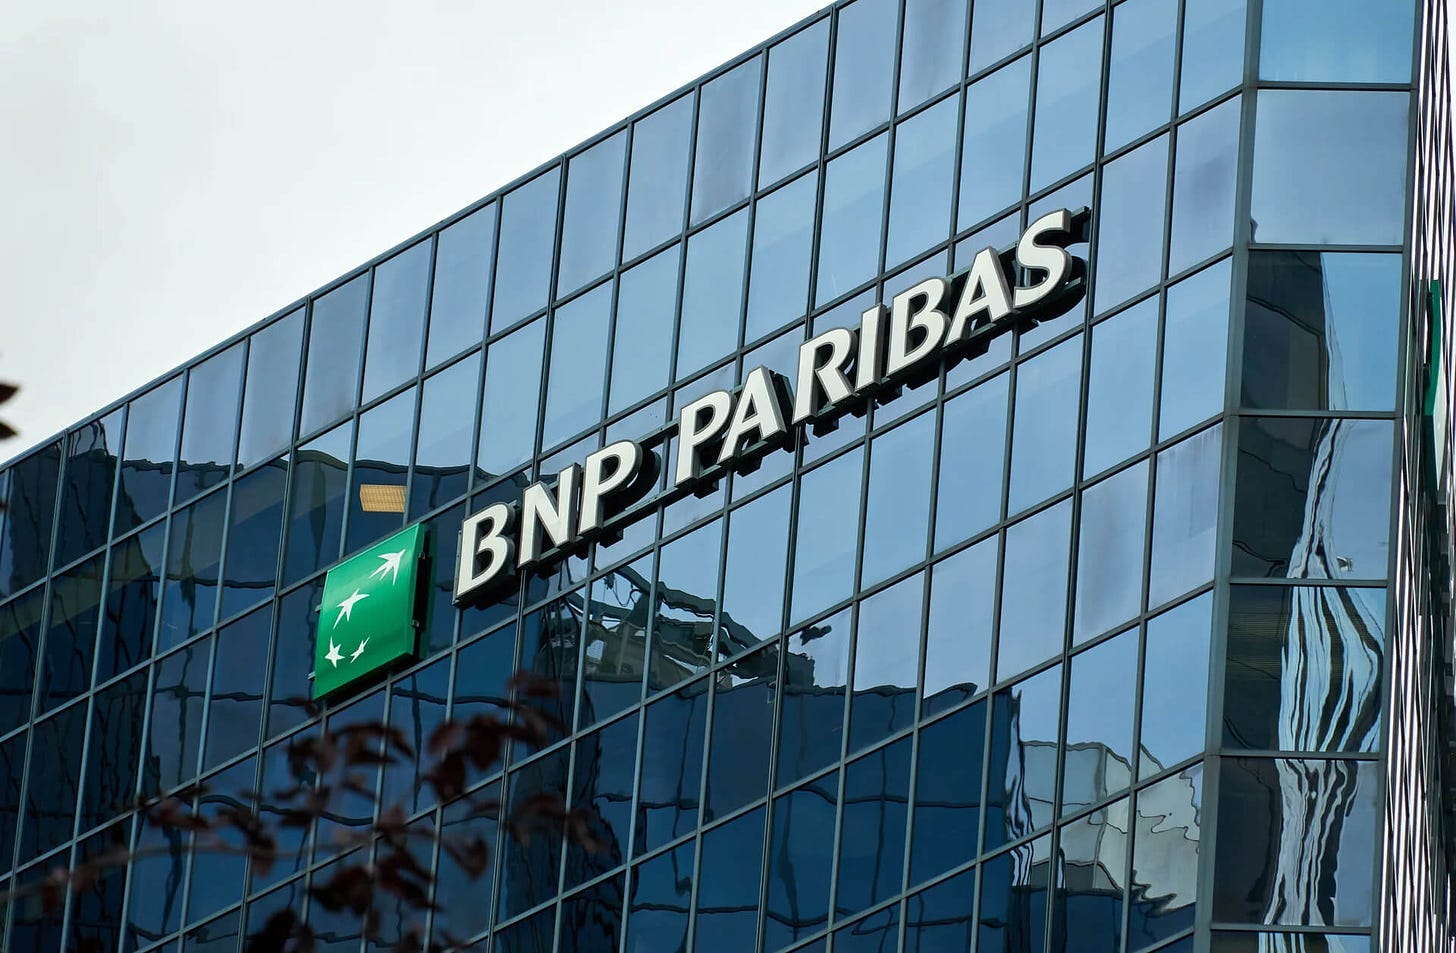 Vista exterior de prédio do banco BNP Paribas com vidro espelhado e logo da empresa.